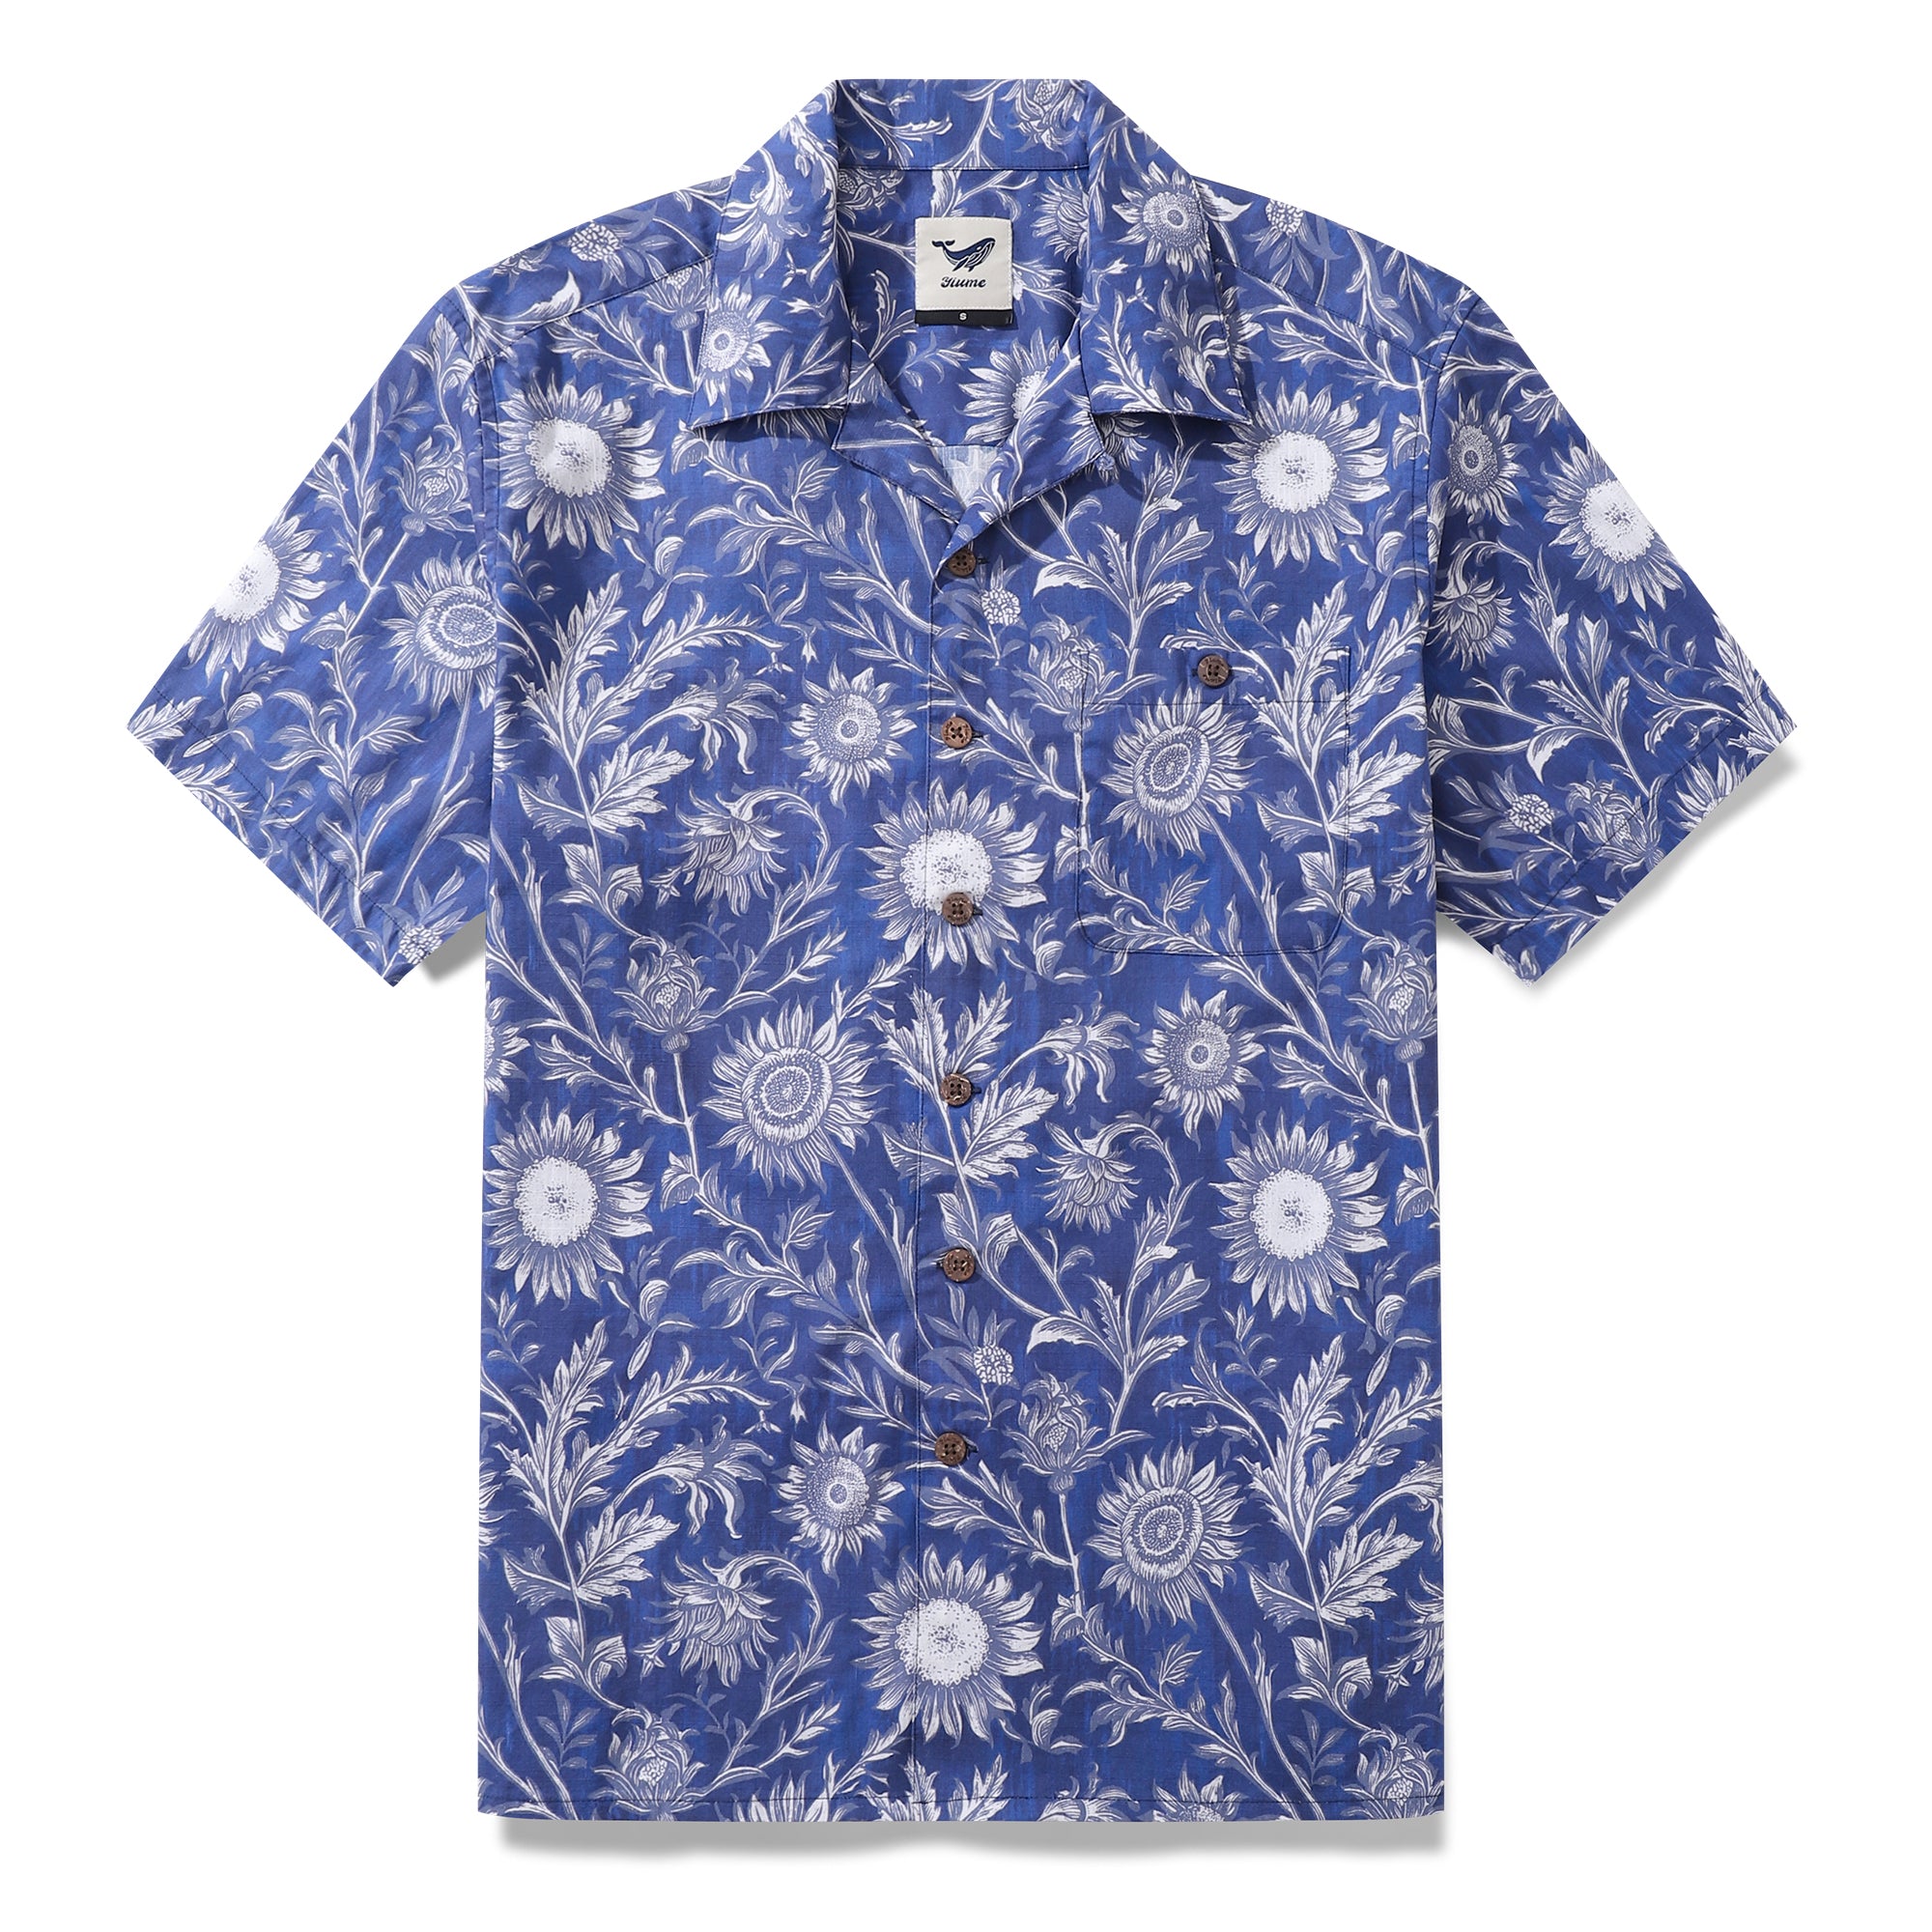 Hawaiian Shirt For Men Blue and White Porcelain Sunflower Camp collar Short Sleeve 100% Cotton Shirt